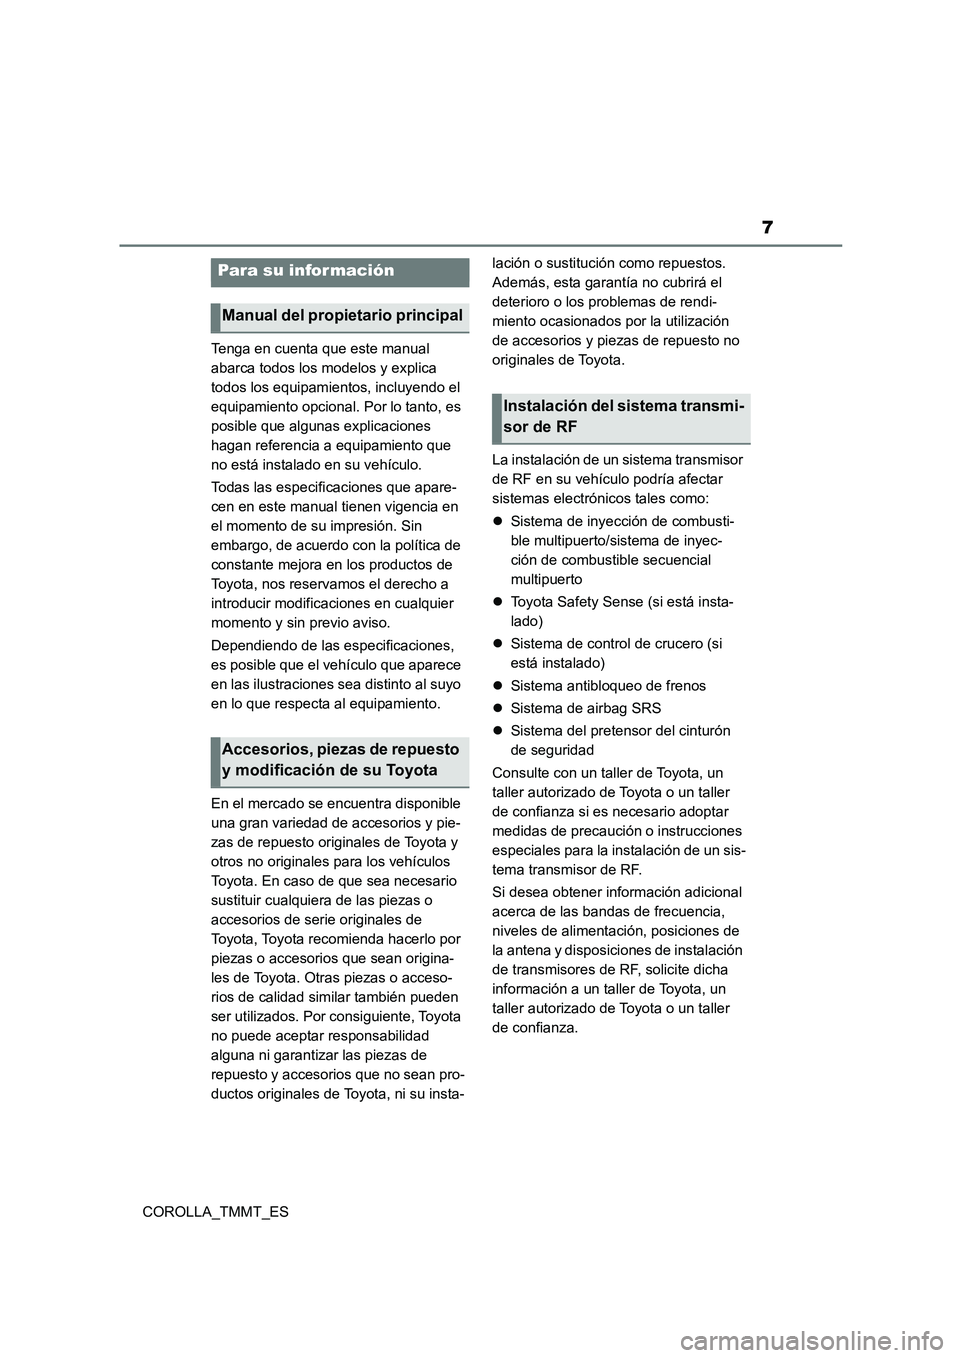 TOYOTA COROLLA 2021  Manual del propietario (in Spanish) 7
COROLLA_TMMT_ES 
Tenga en cuenta que este manual  
abarca todos los modelos y explica 
todos los equipamientos, incluyendo el 
equipamiento opcional. Por lo tanto, es 
posible que algunas explicacio